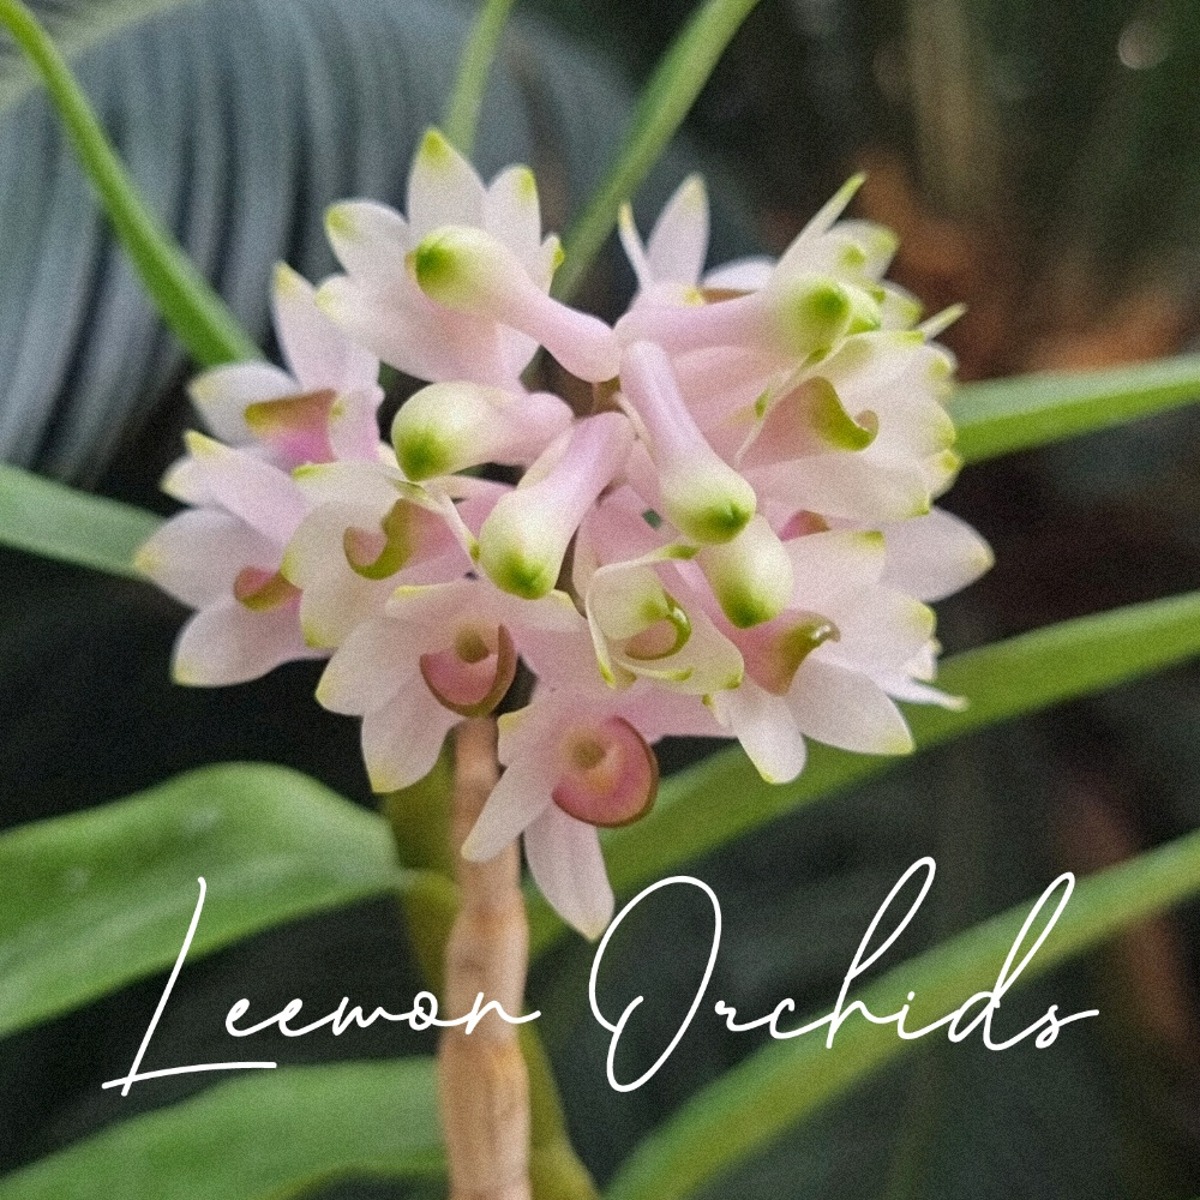 덴드로비움 (스밀리아이 x 미야케이) Dendrobium (smilliae x miyakei) (온라인 한정재고: 1)